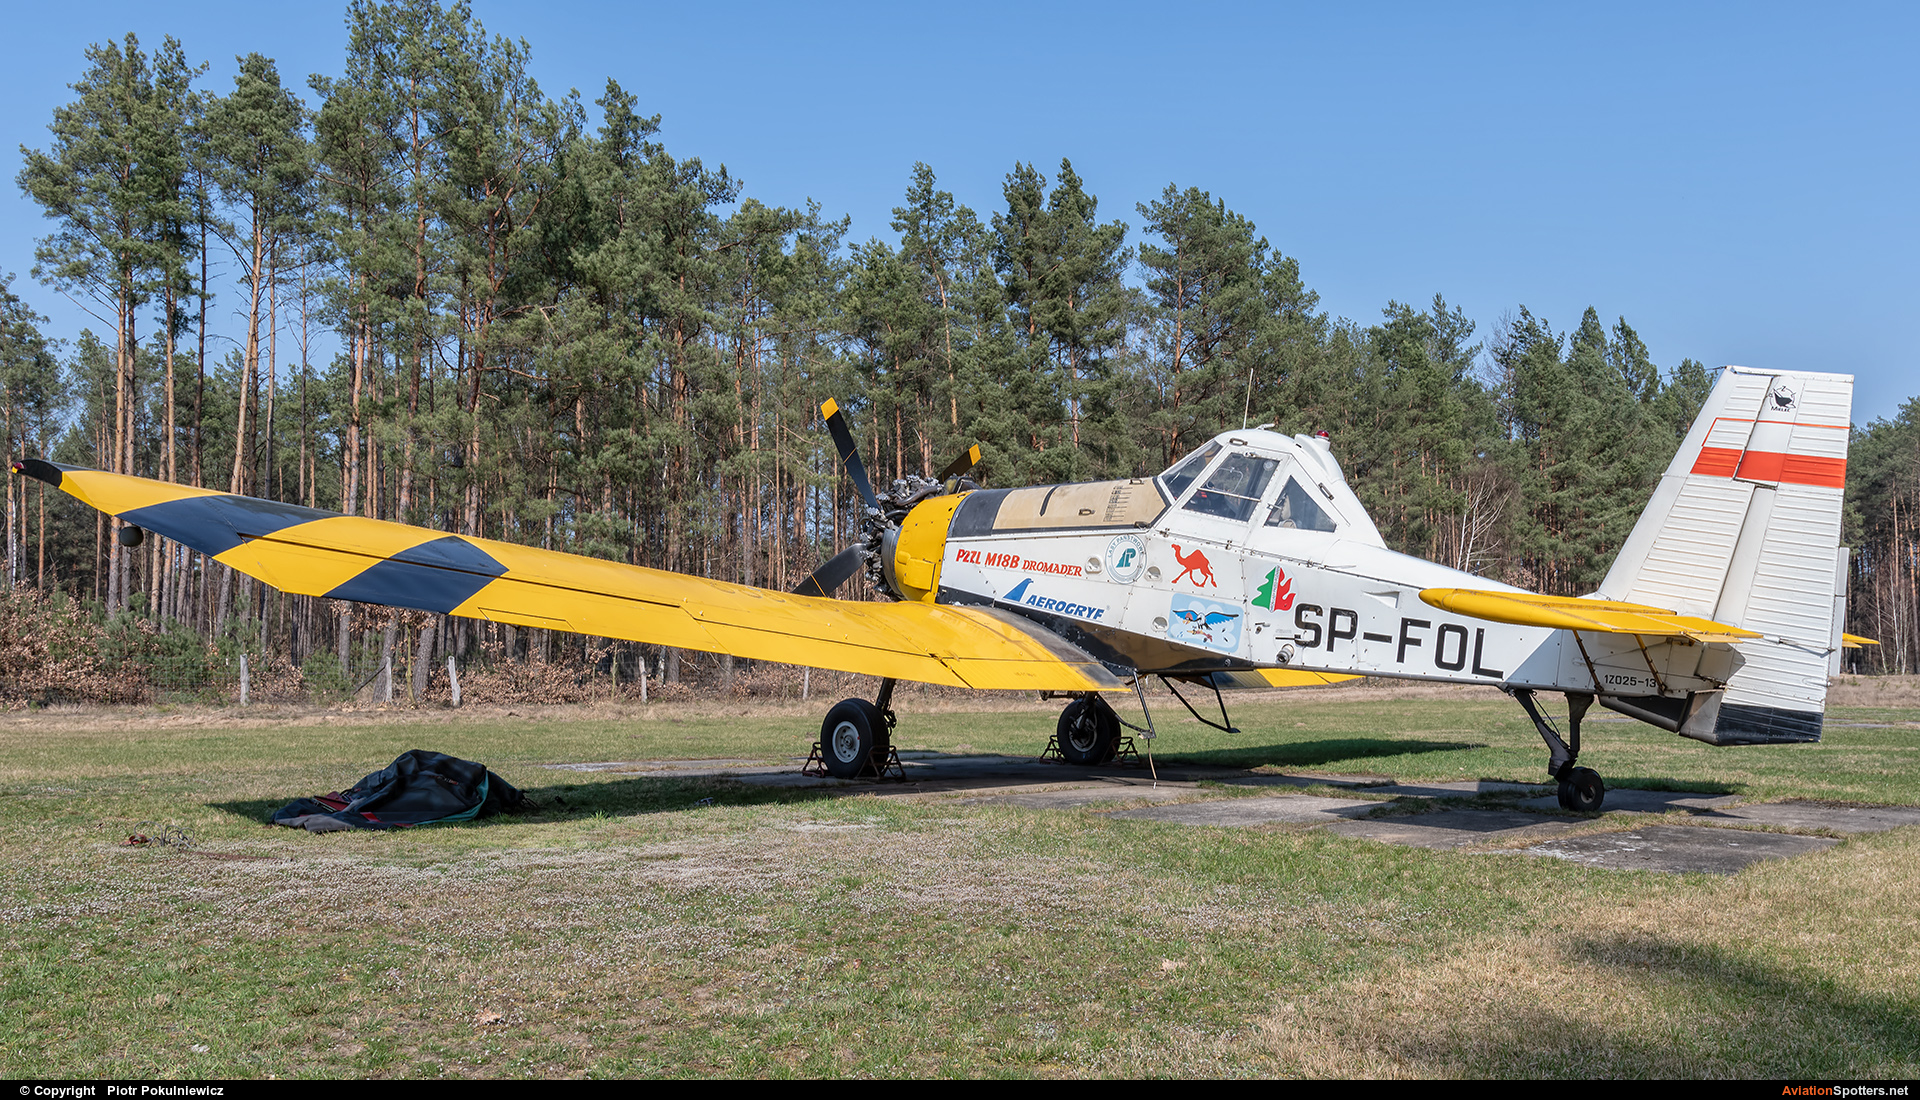 Aerogryf  -  M-18 Dromader  (SP-FOL) By Piotr Pokulniewicz (Piciu)